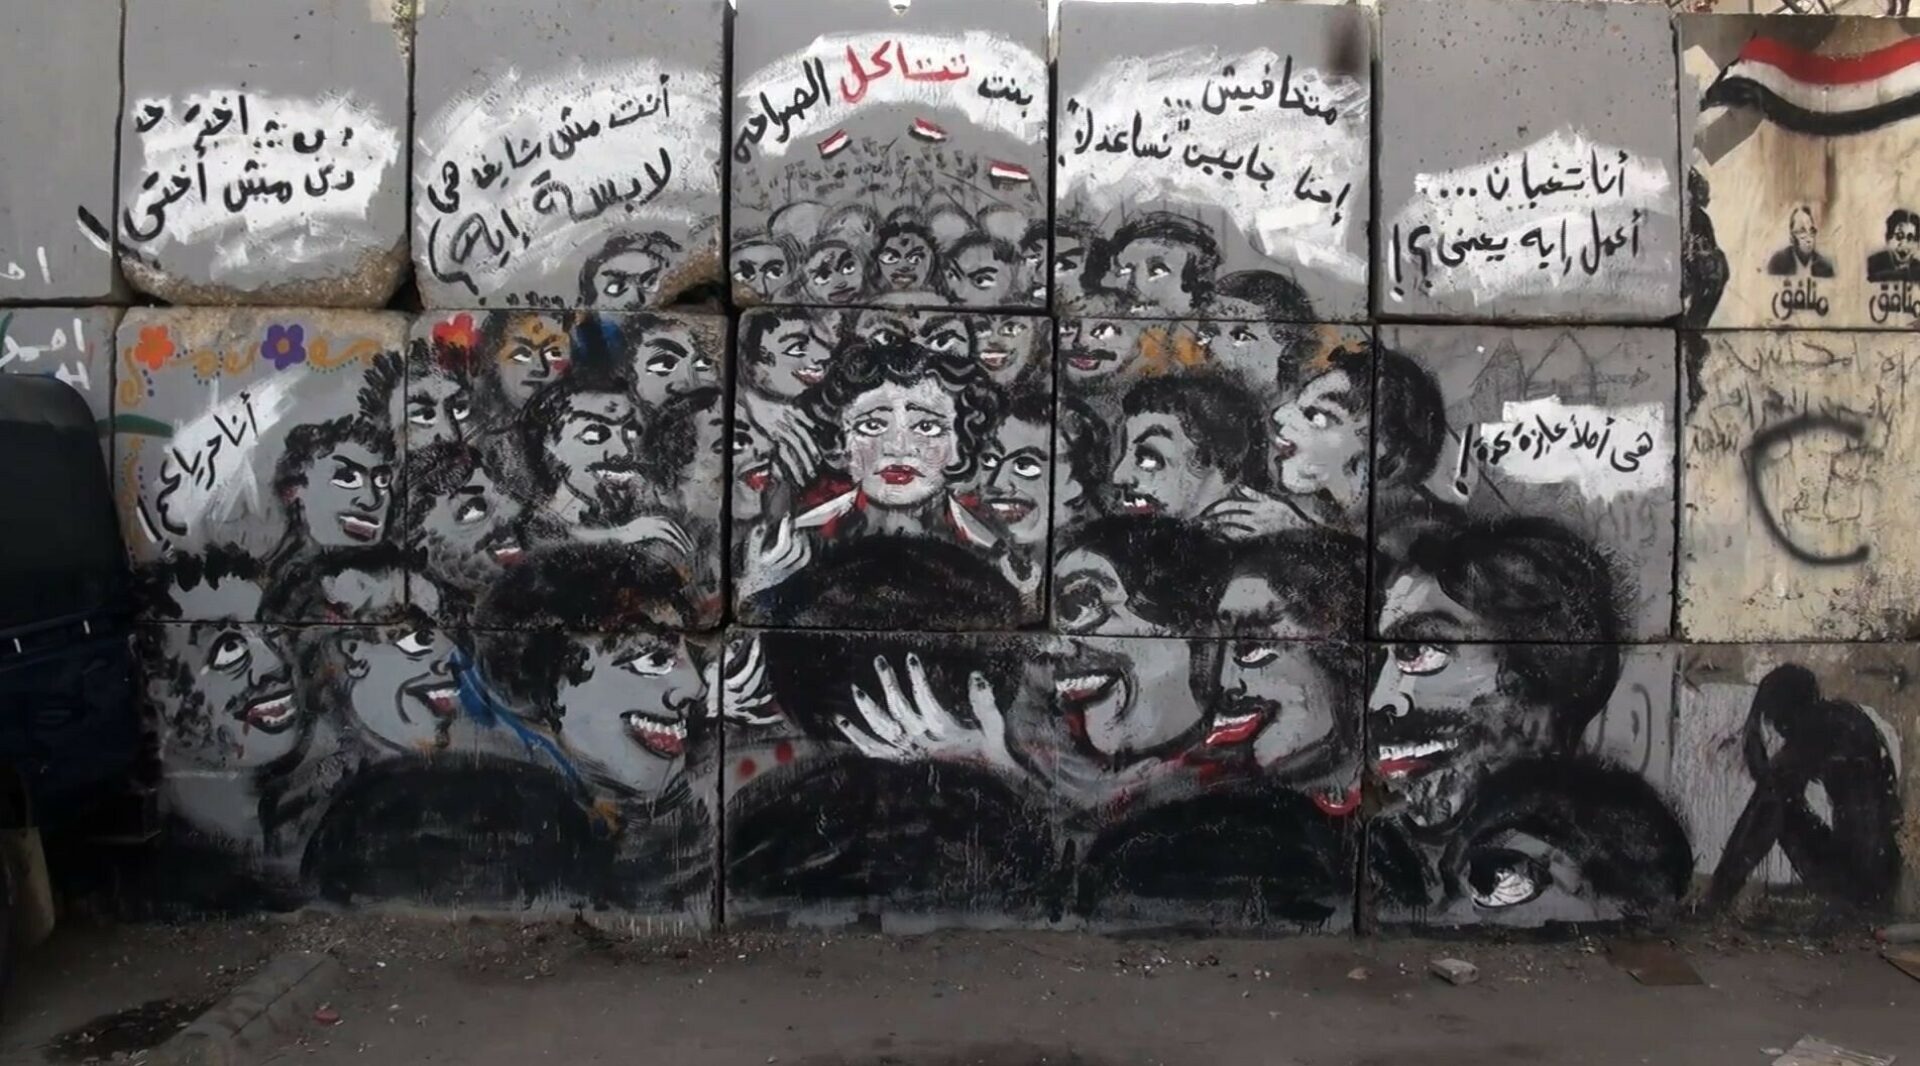 Graffiti gegen sexuelle Belästigung auf einer Häuserwand in Kairo. Graffiti art by Mira Shihadeh